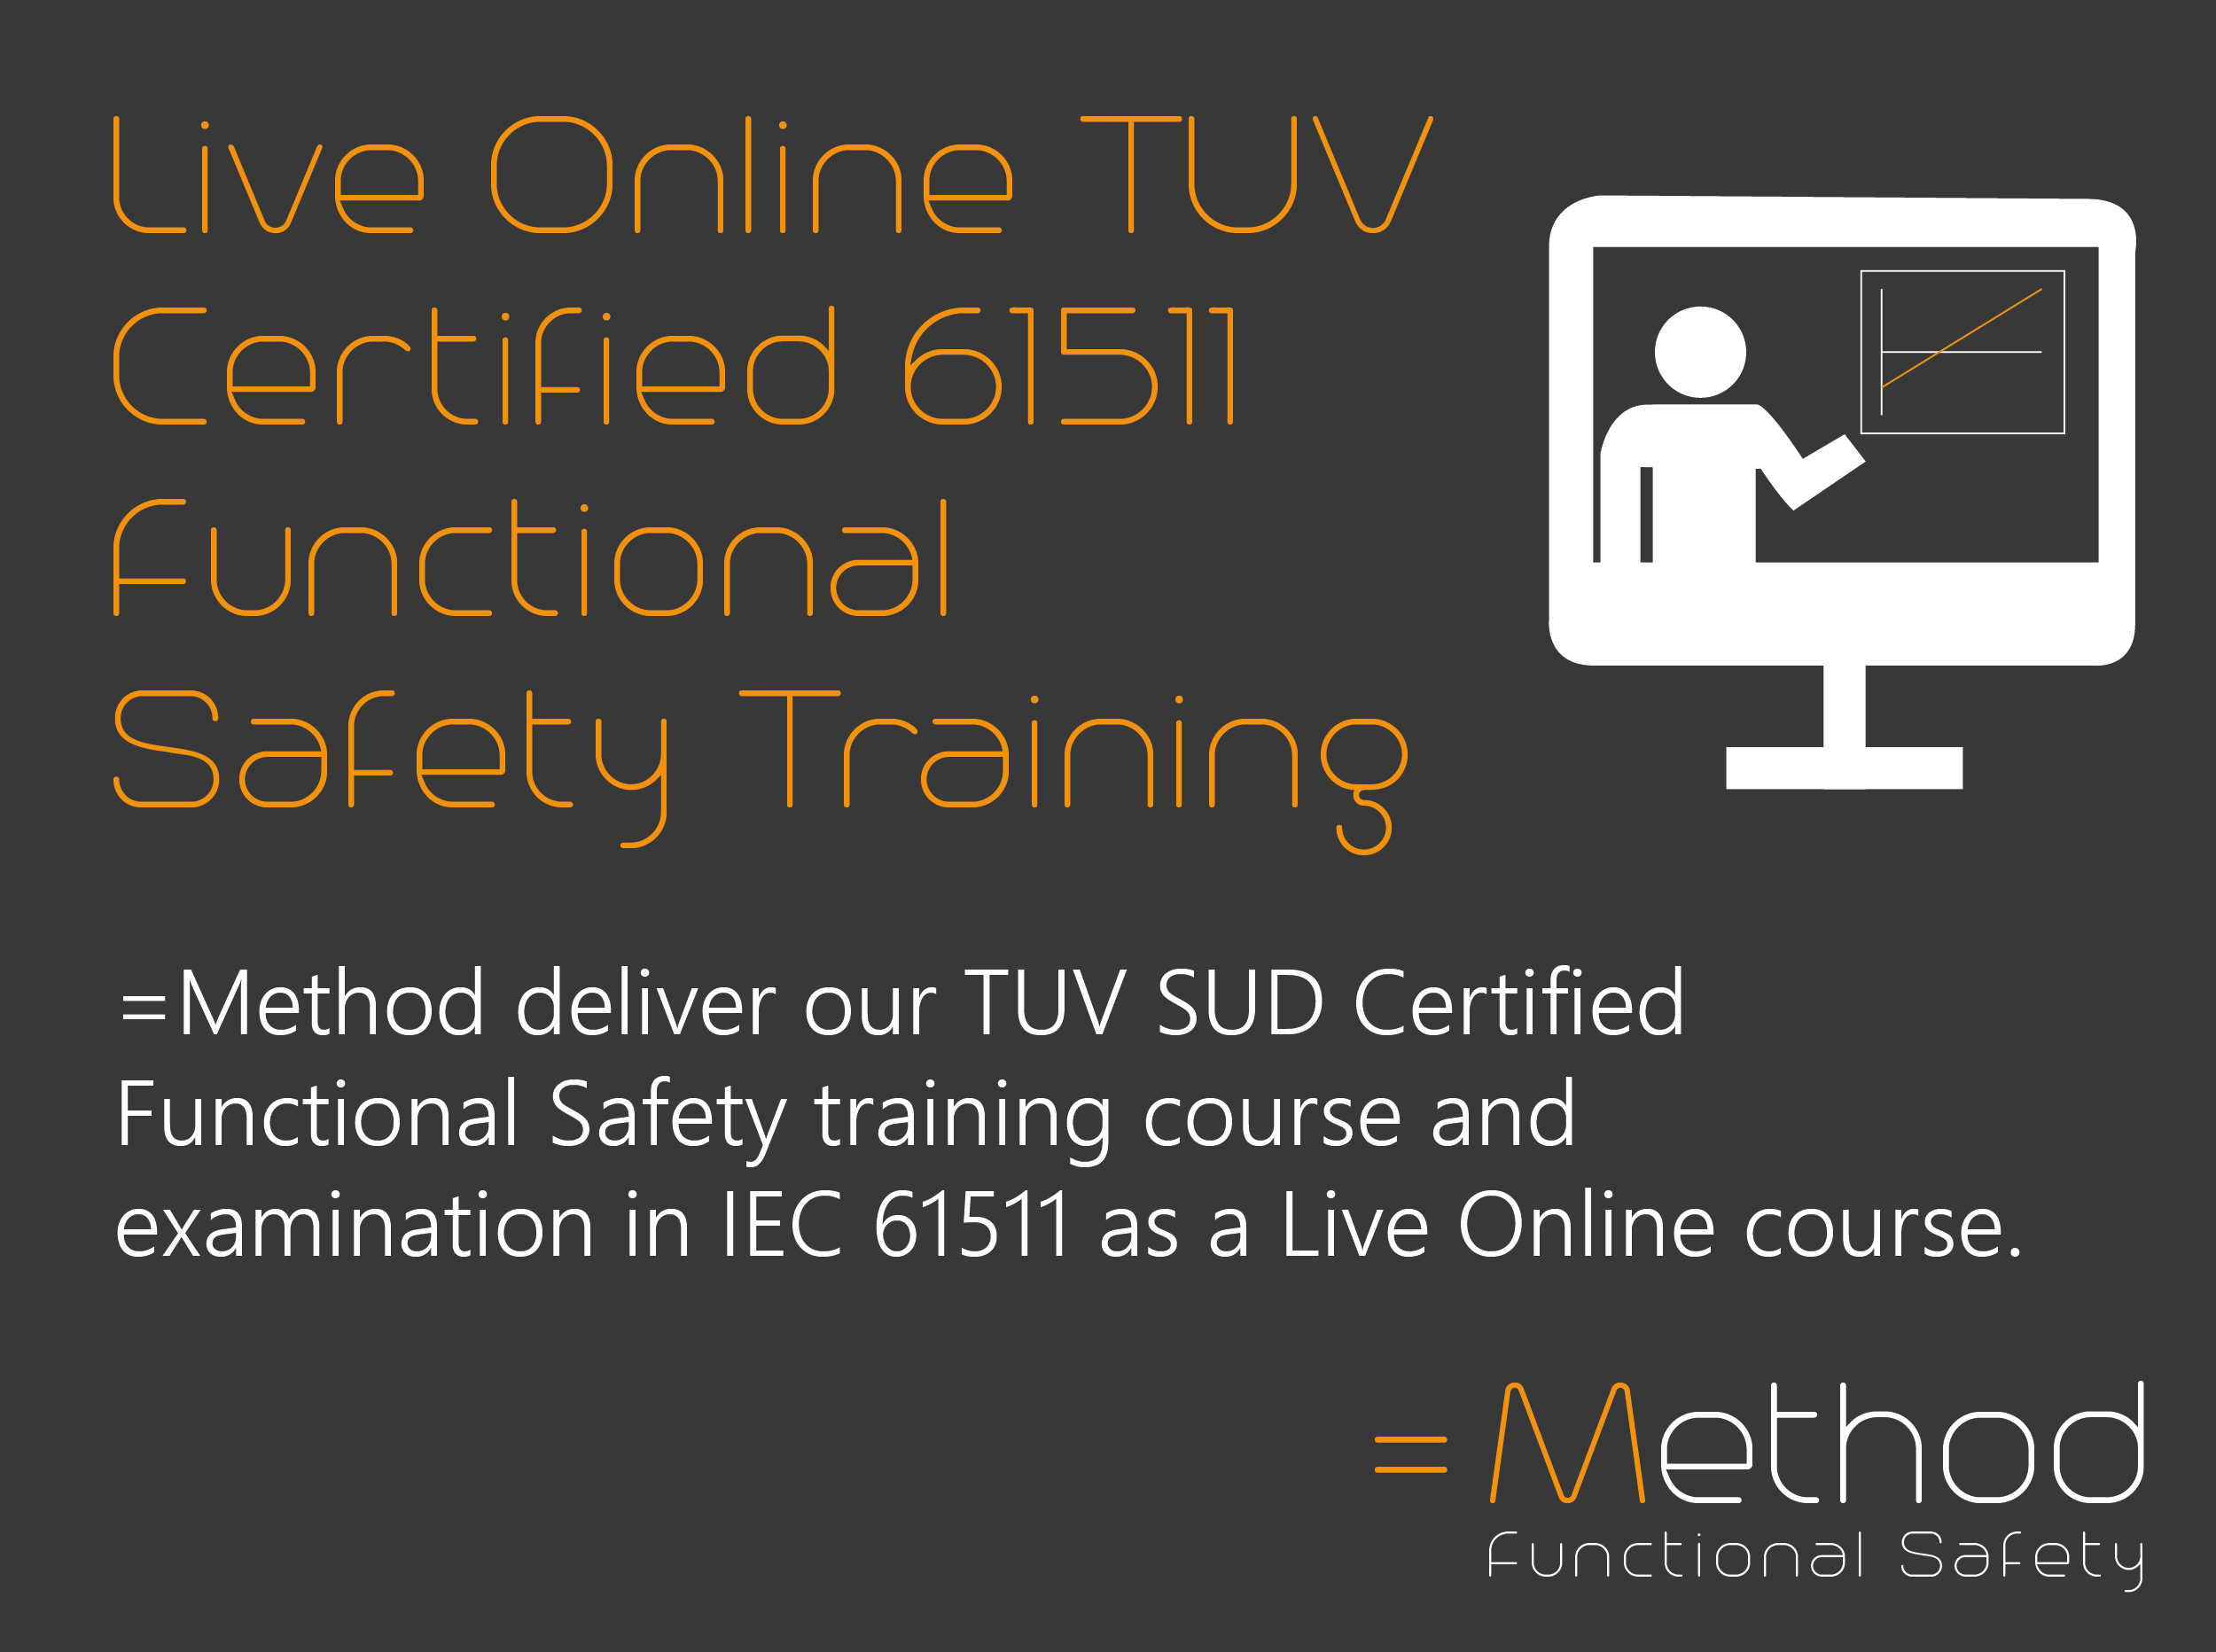 Online TUV Training in IEC 61511 Method